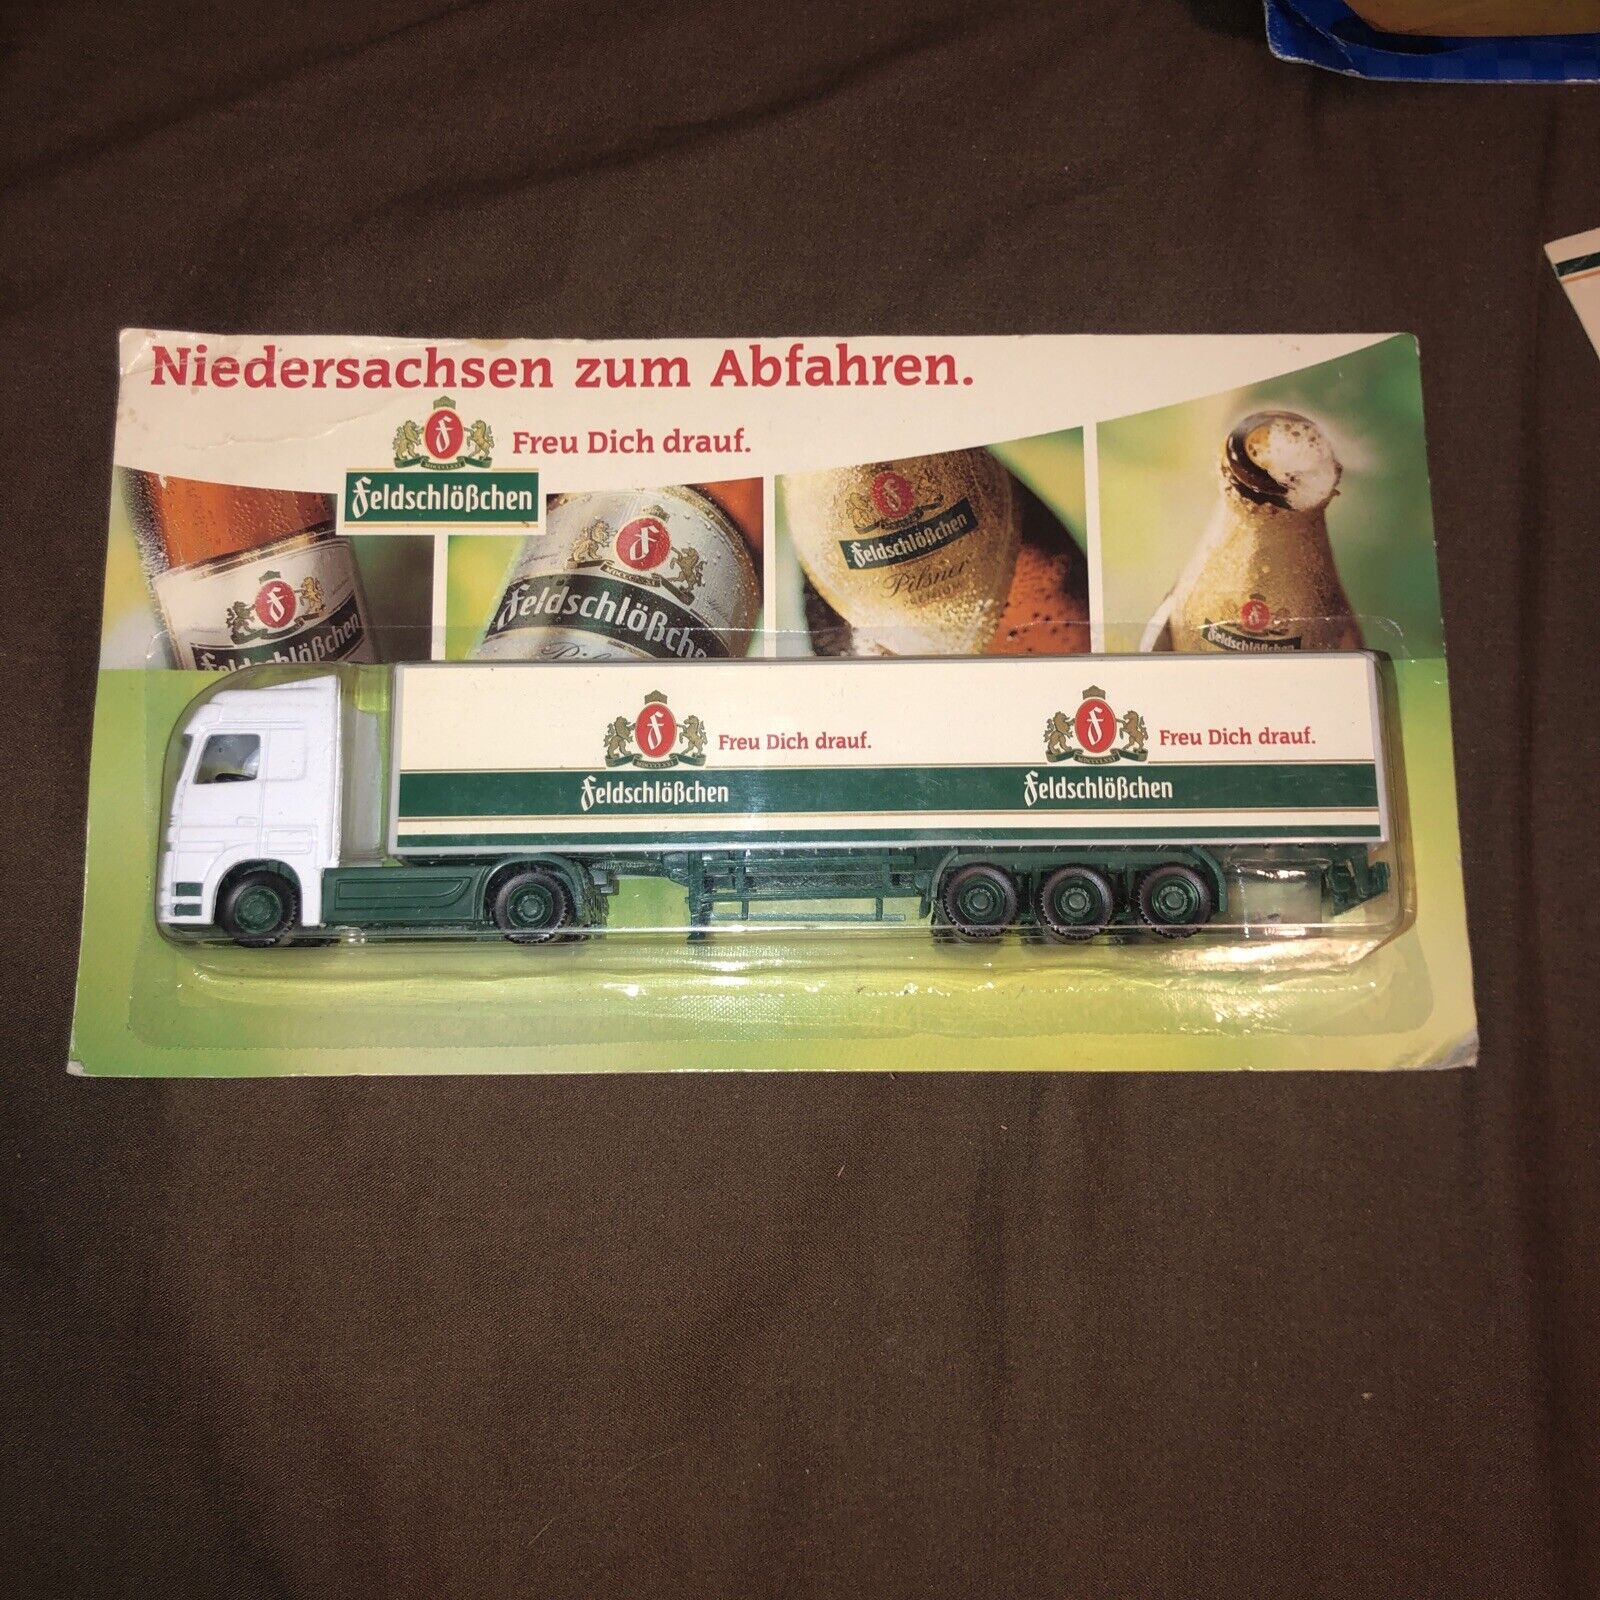 FeldschloBchen German Beer Advertising Collectible Truck/Trailer Brand New